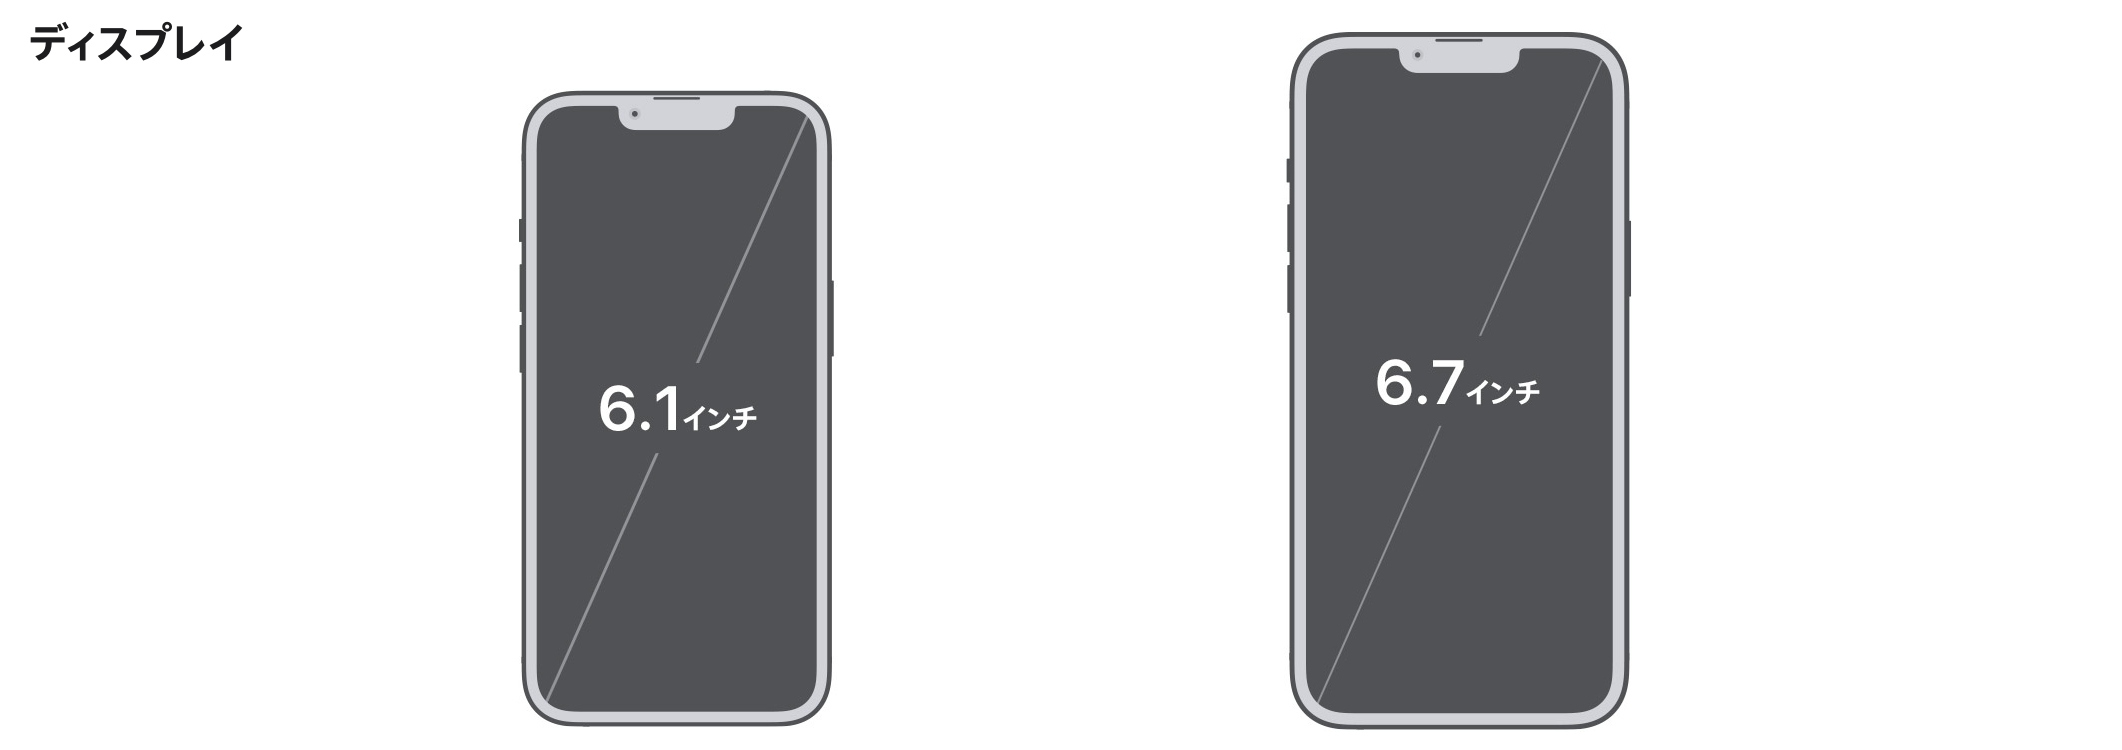 iPhone13 Proのサイズ